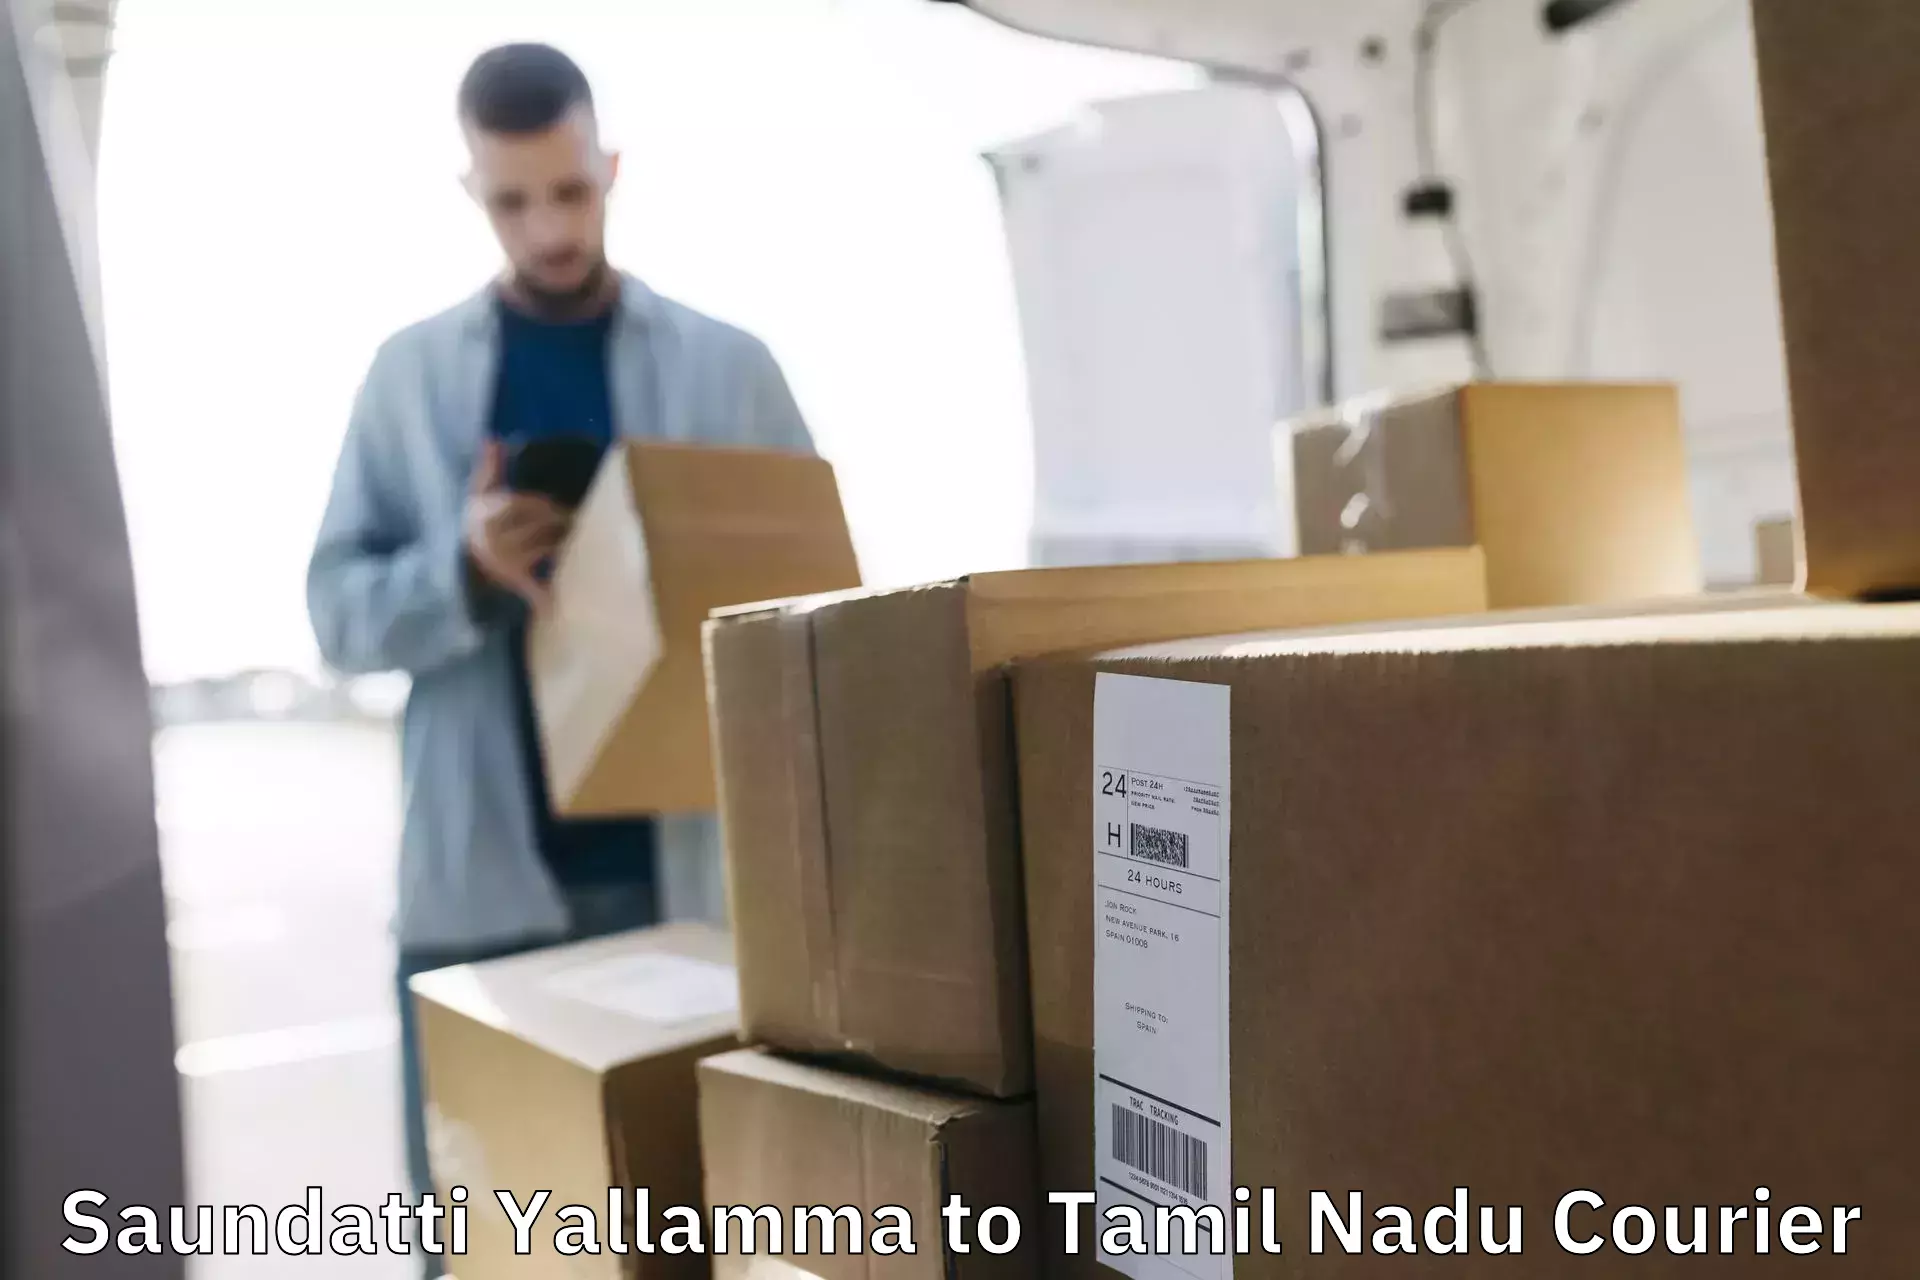 On-demand shipping options Saundatti Yallamma to Thiruthuraipoondi